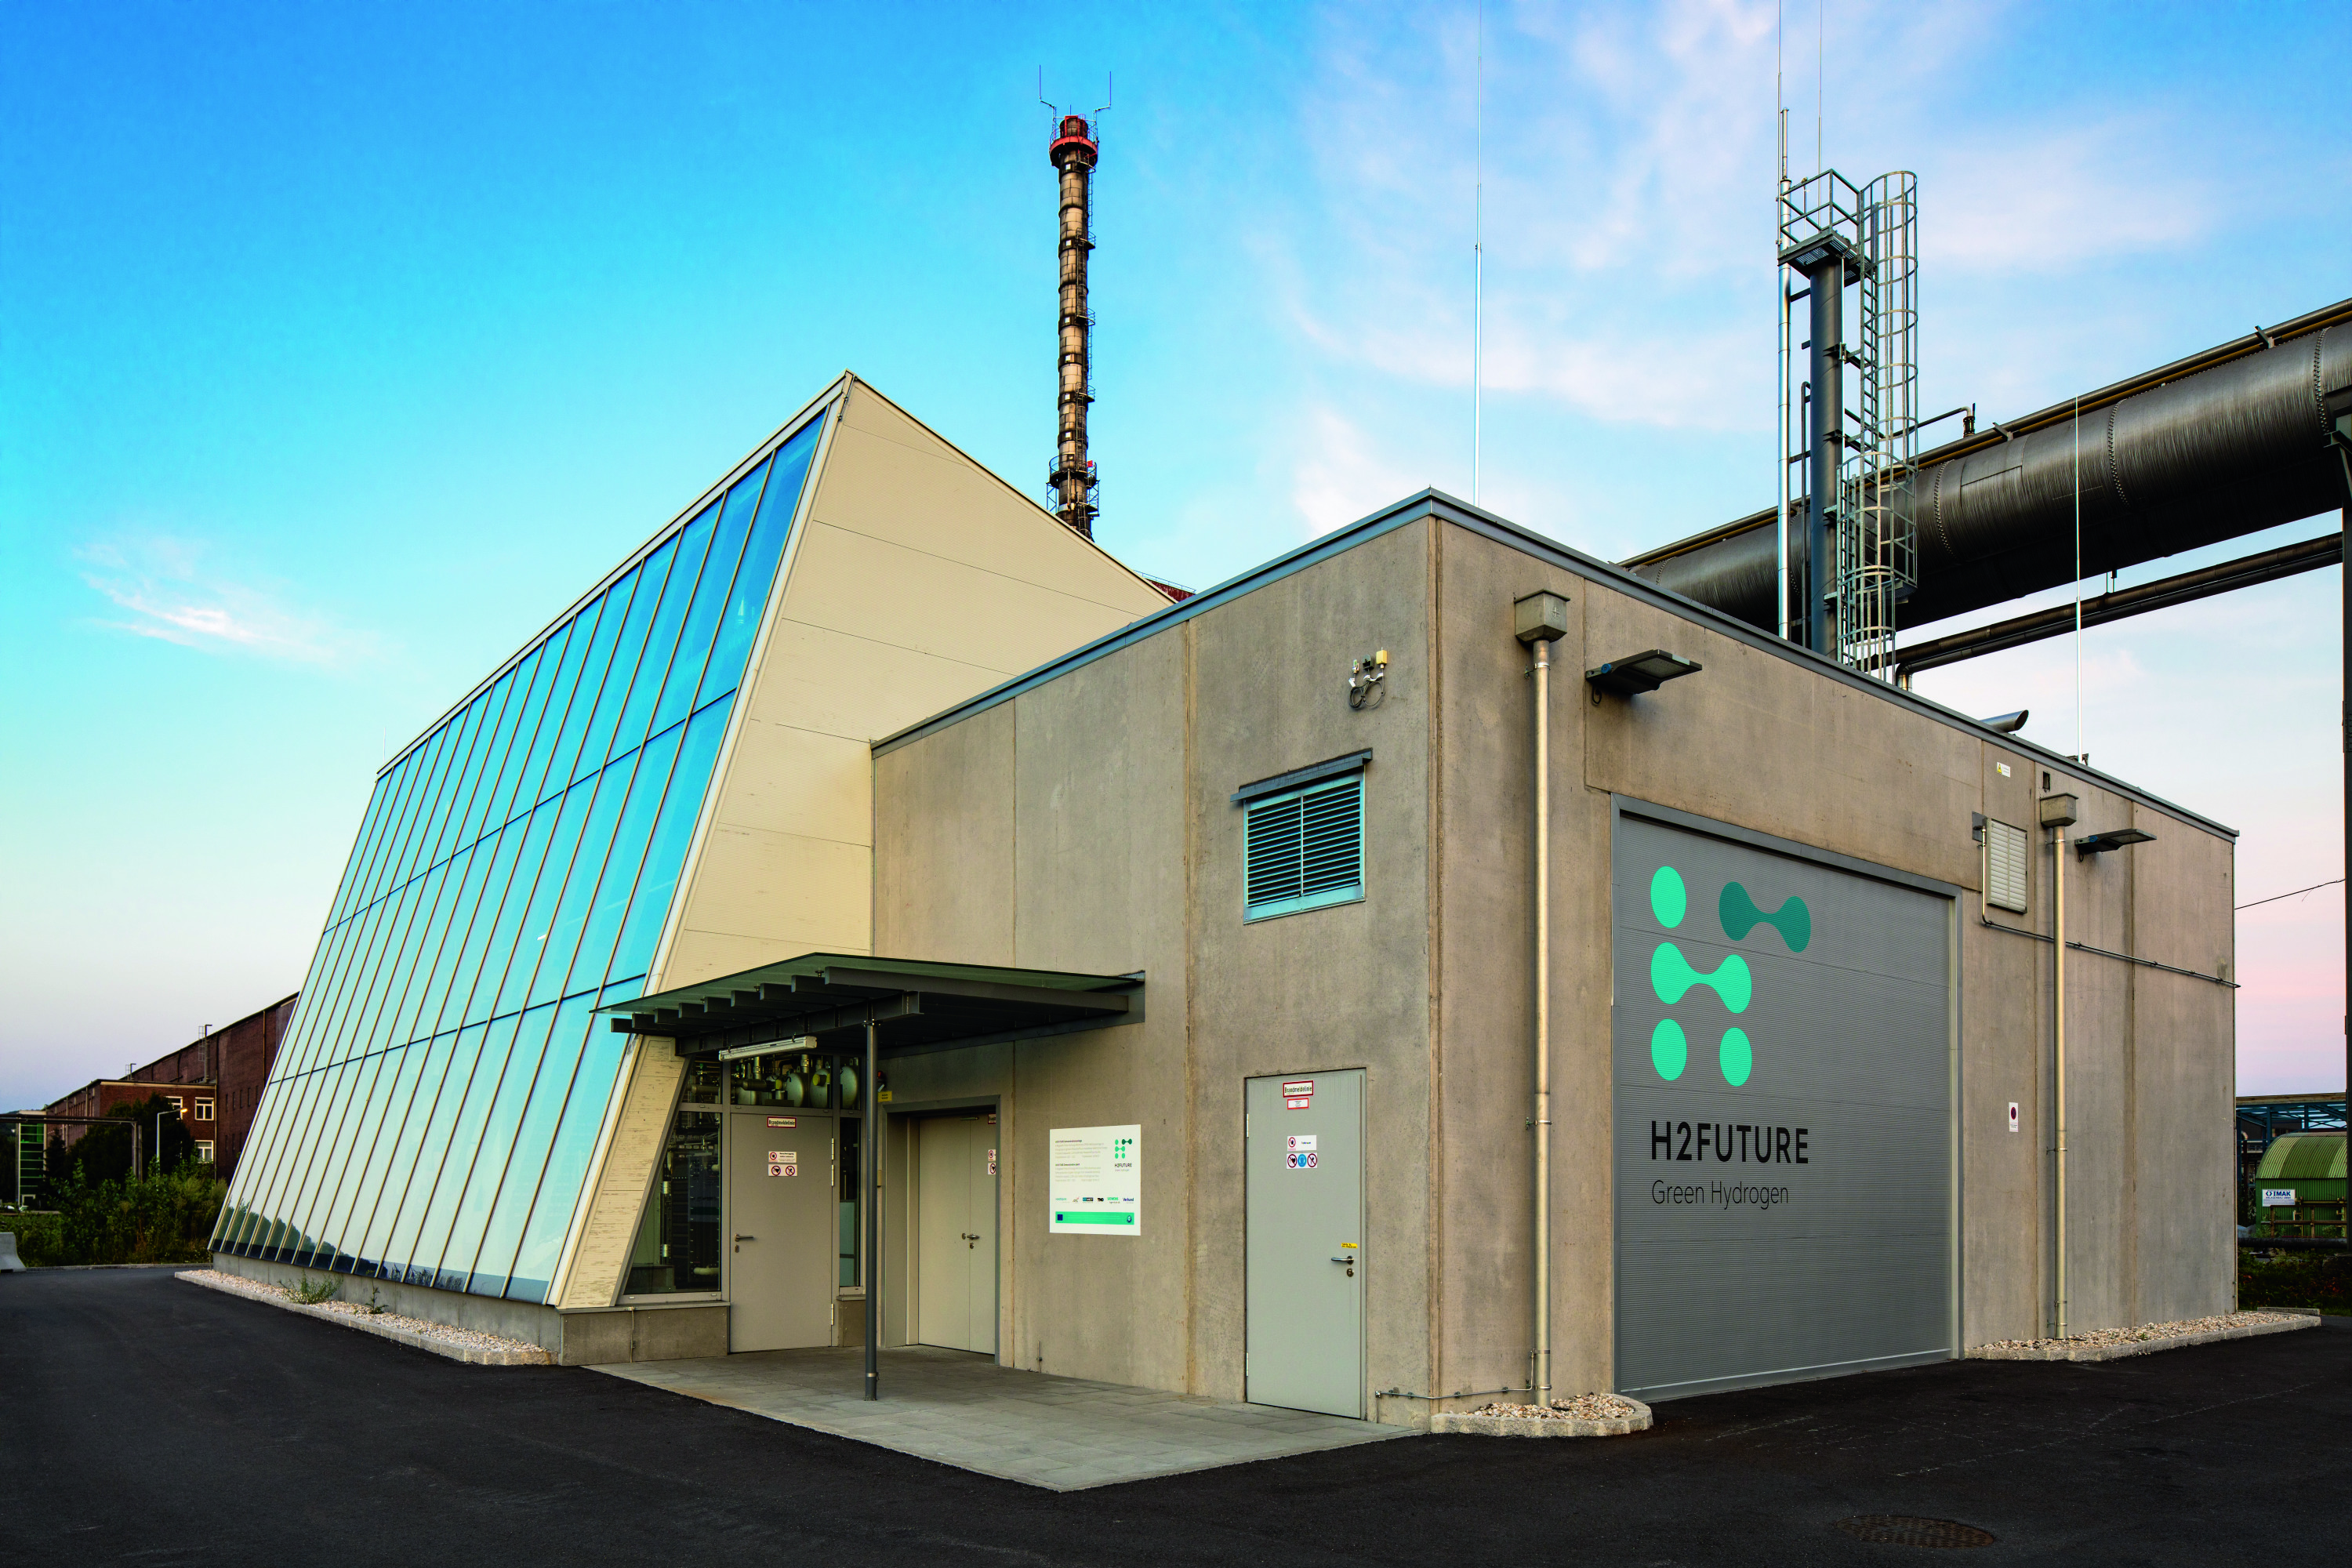 Voestalpine's H2H2FUTURE green hydrogen plant in Linz, Austria.